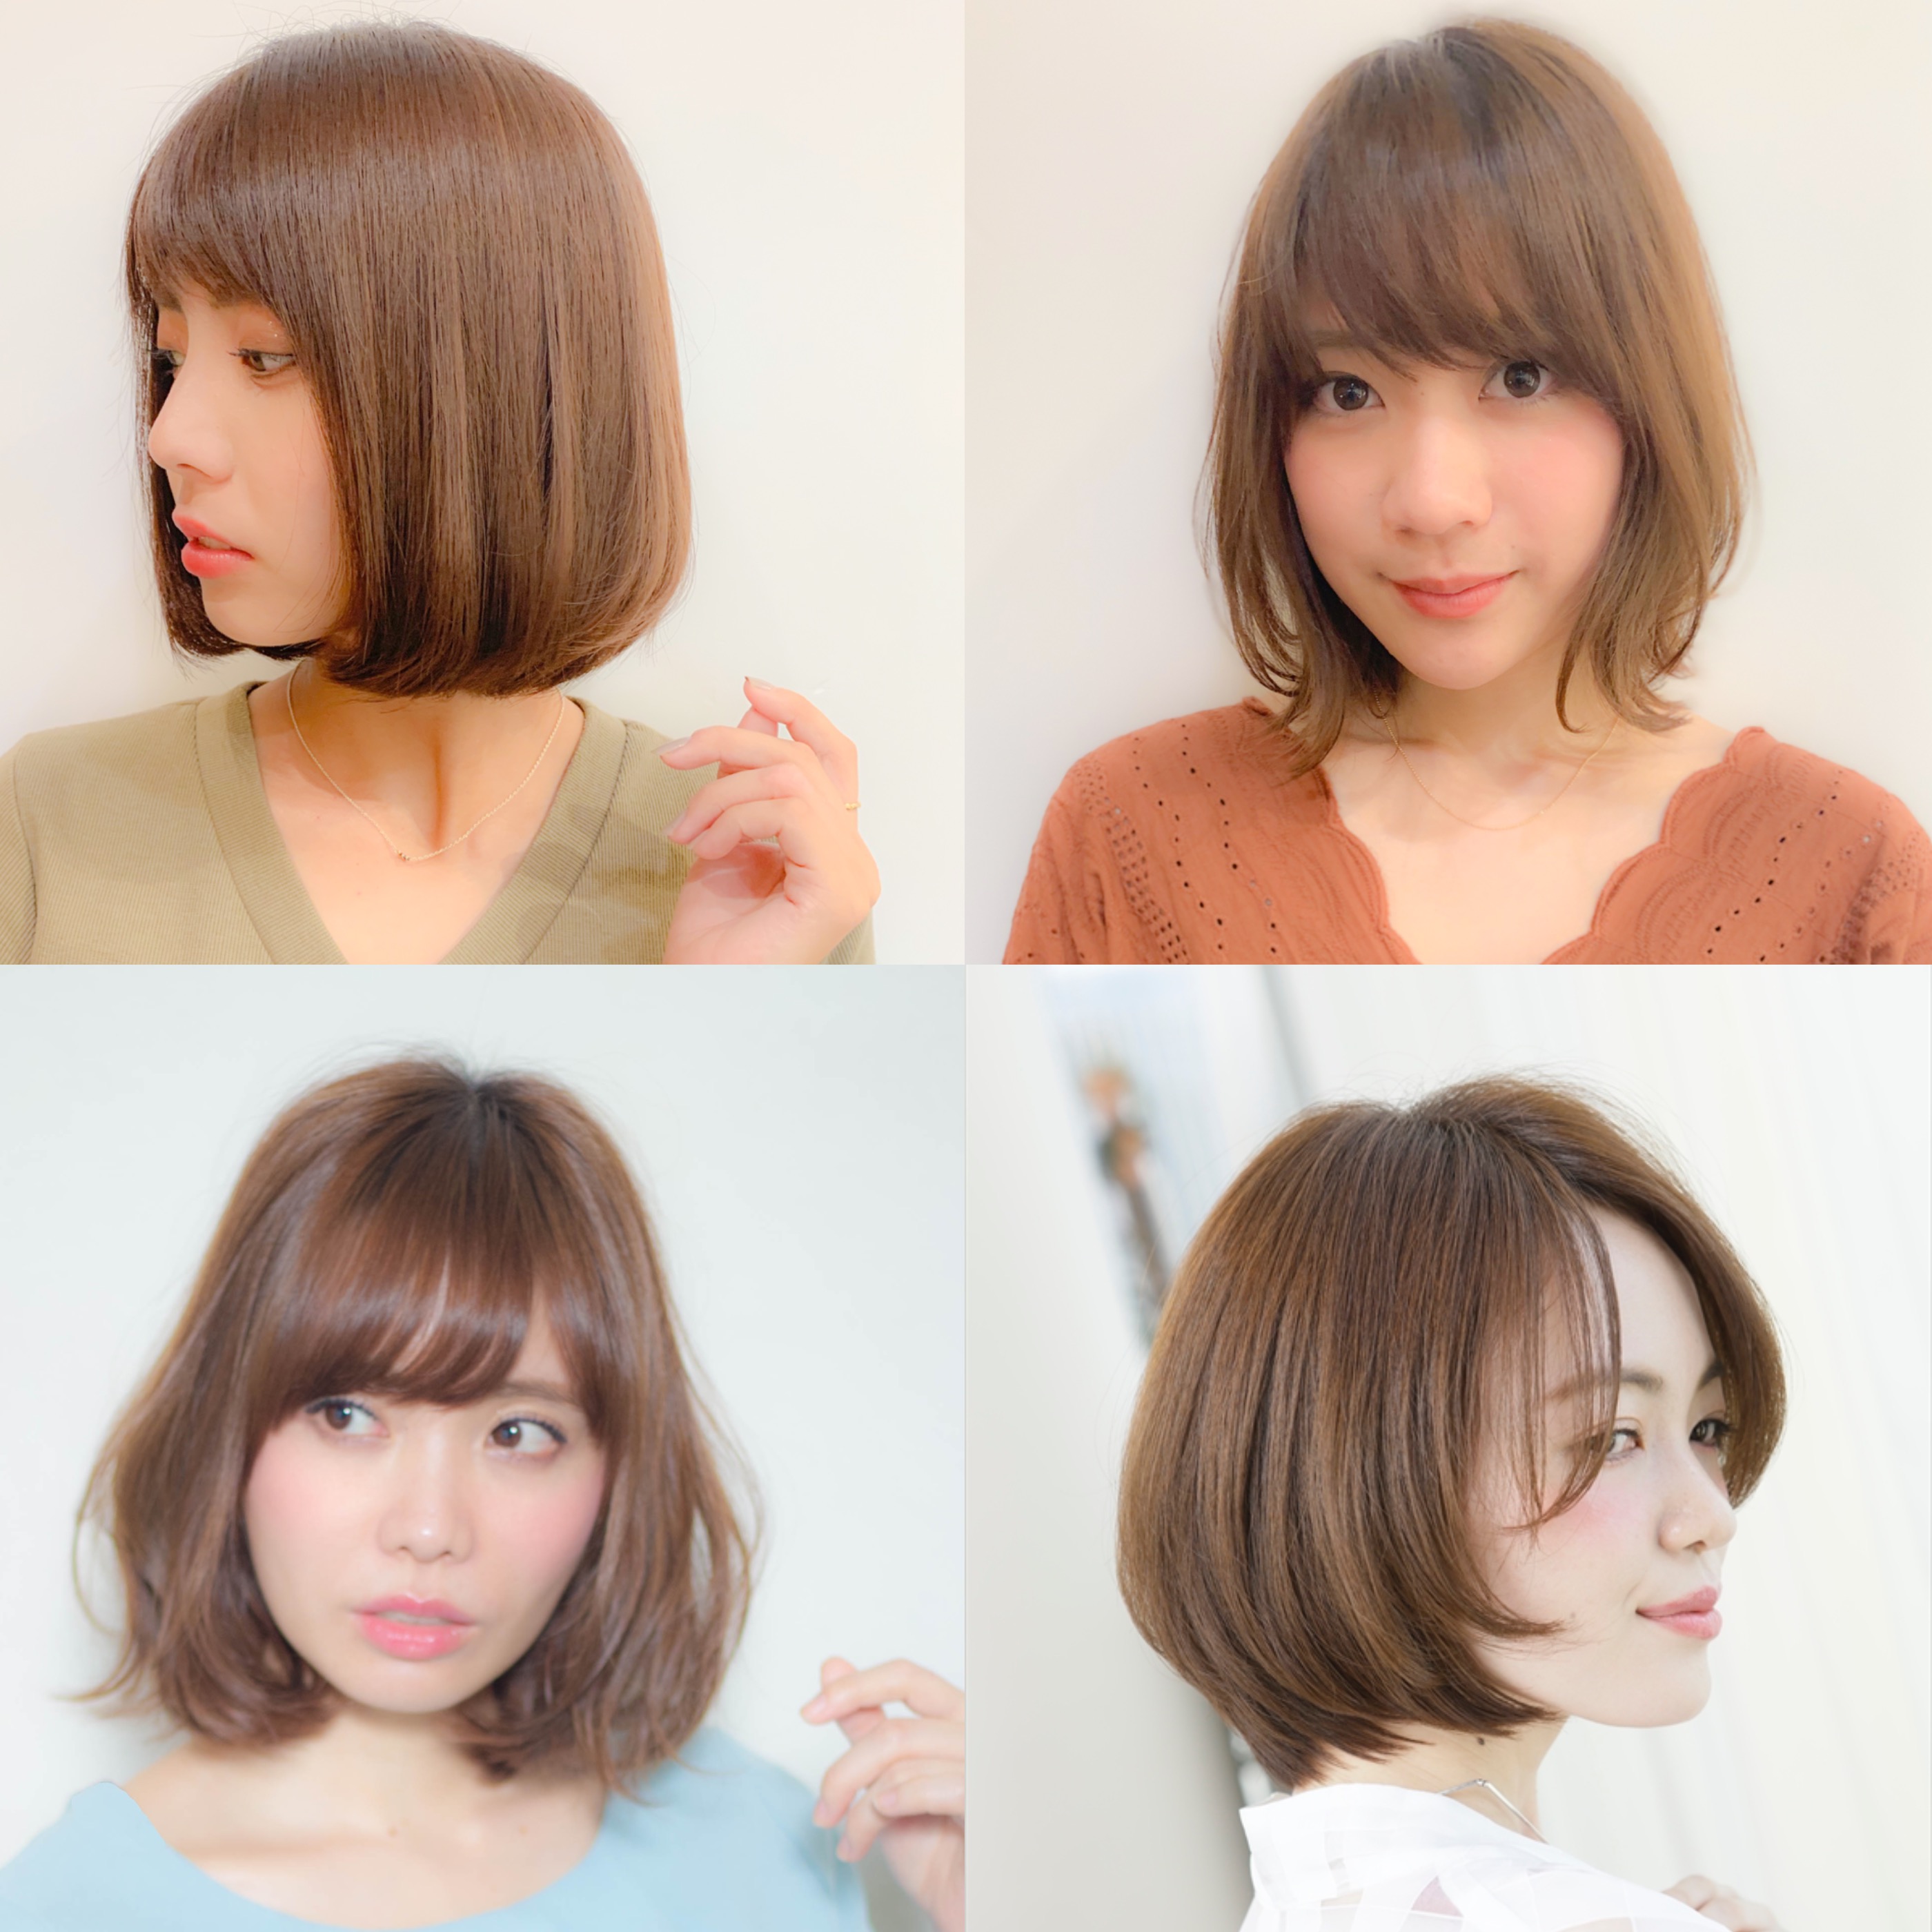 面長さんに似合う前髪 おすすめの前髪あり なしの髪型を解説 似合わせカットが上手い東京の美容師 美容室minx銀座 蛭田のブログ